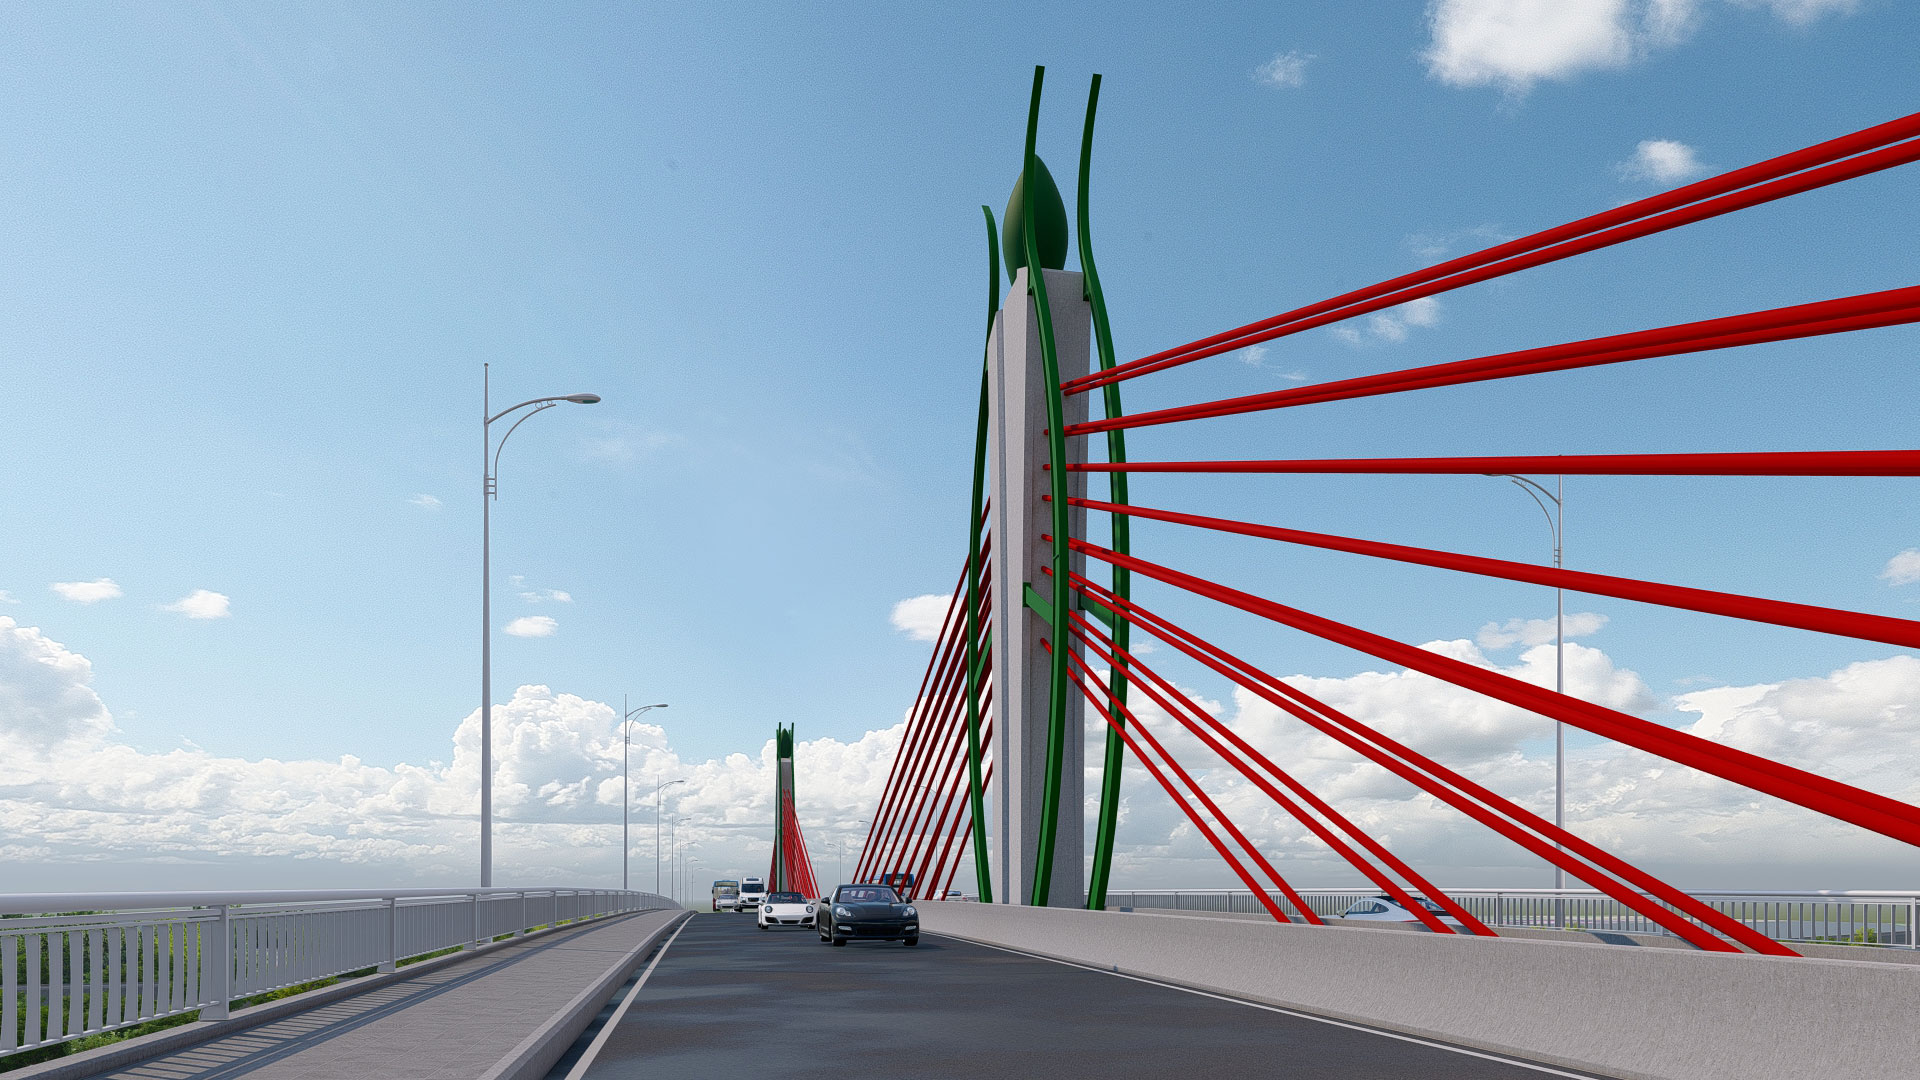 完成之后，况上桥将为促进经济社会发展，为太原市都市创造现代面貌，为家七桥、潭象桥、高岸桥减少交通压力。